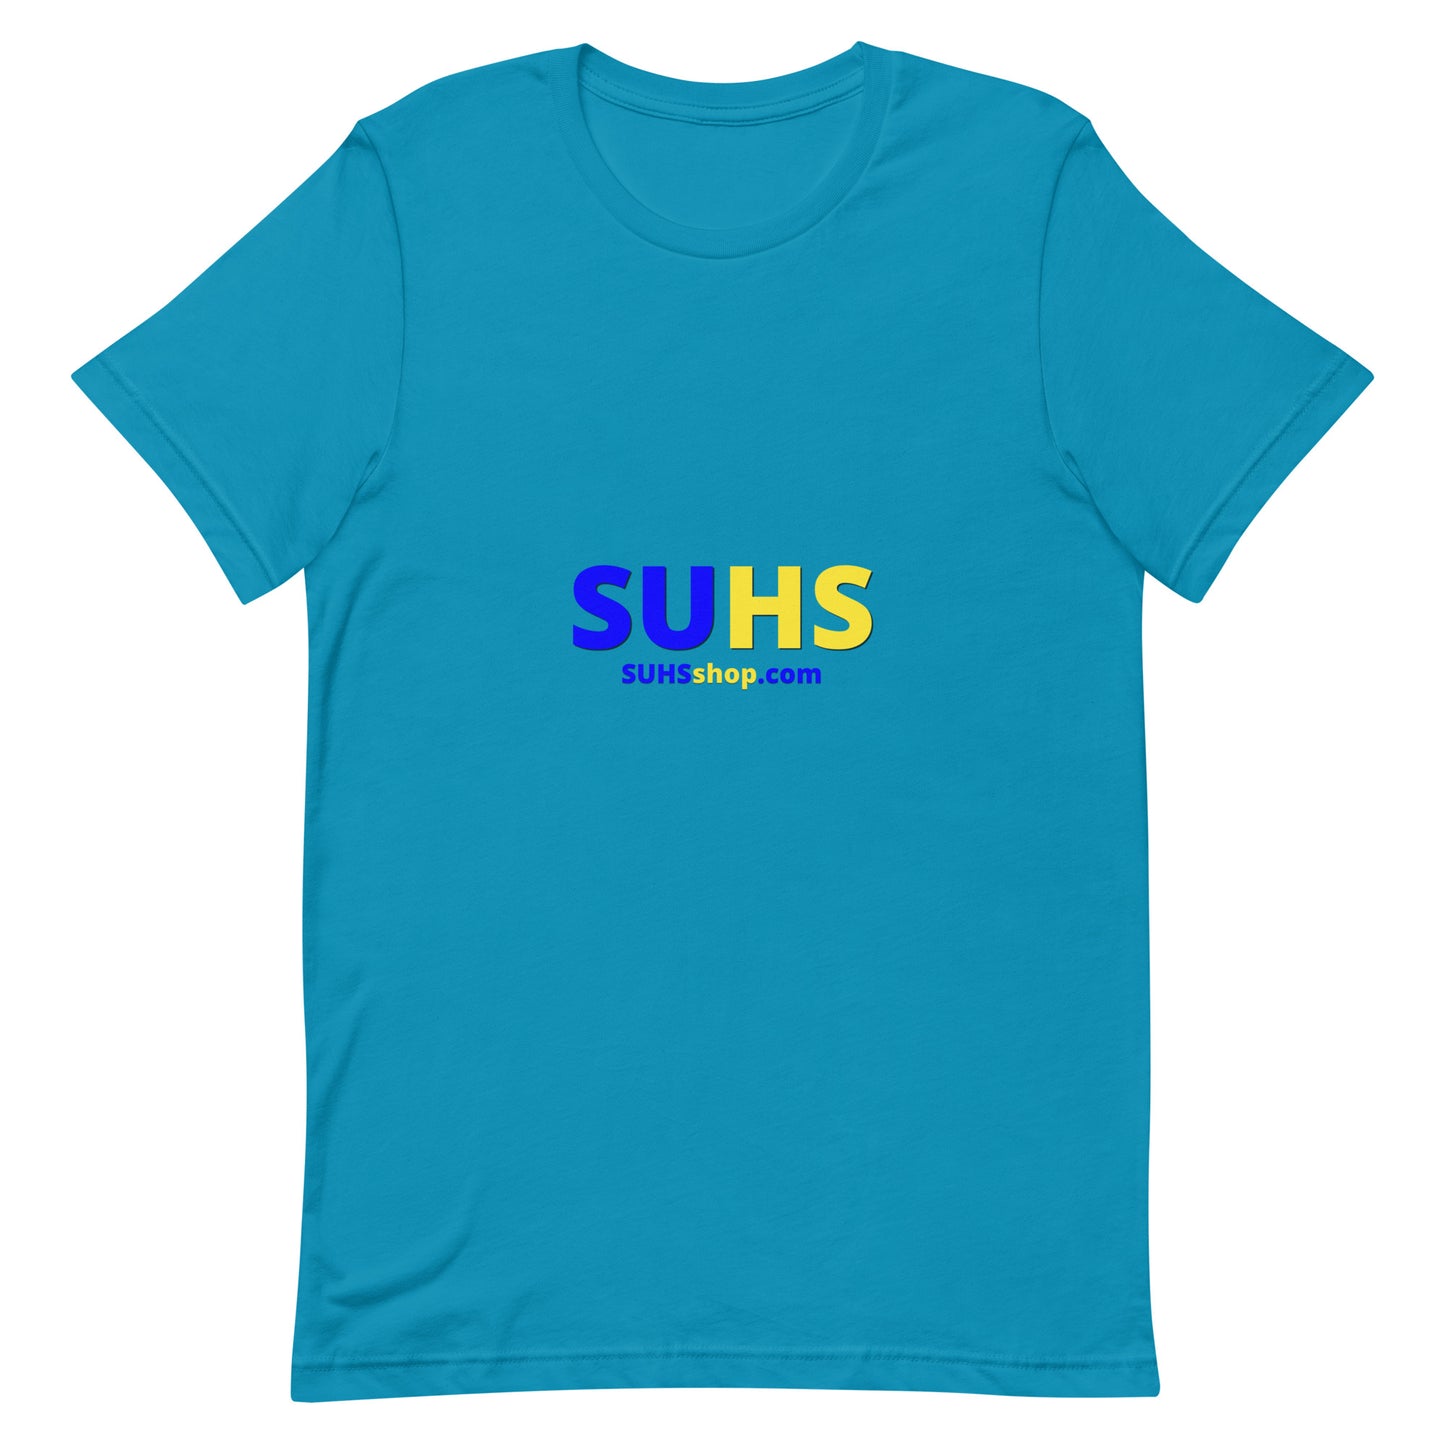 camiseta unisex